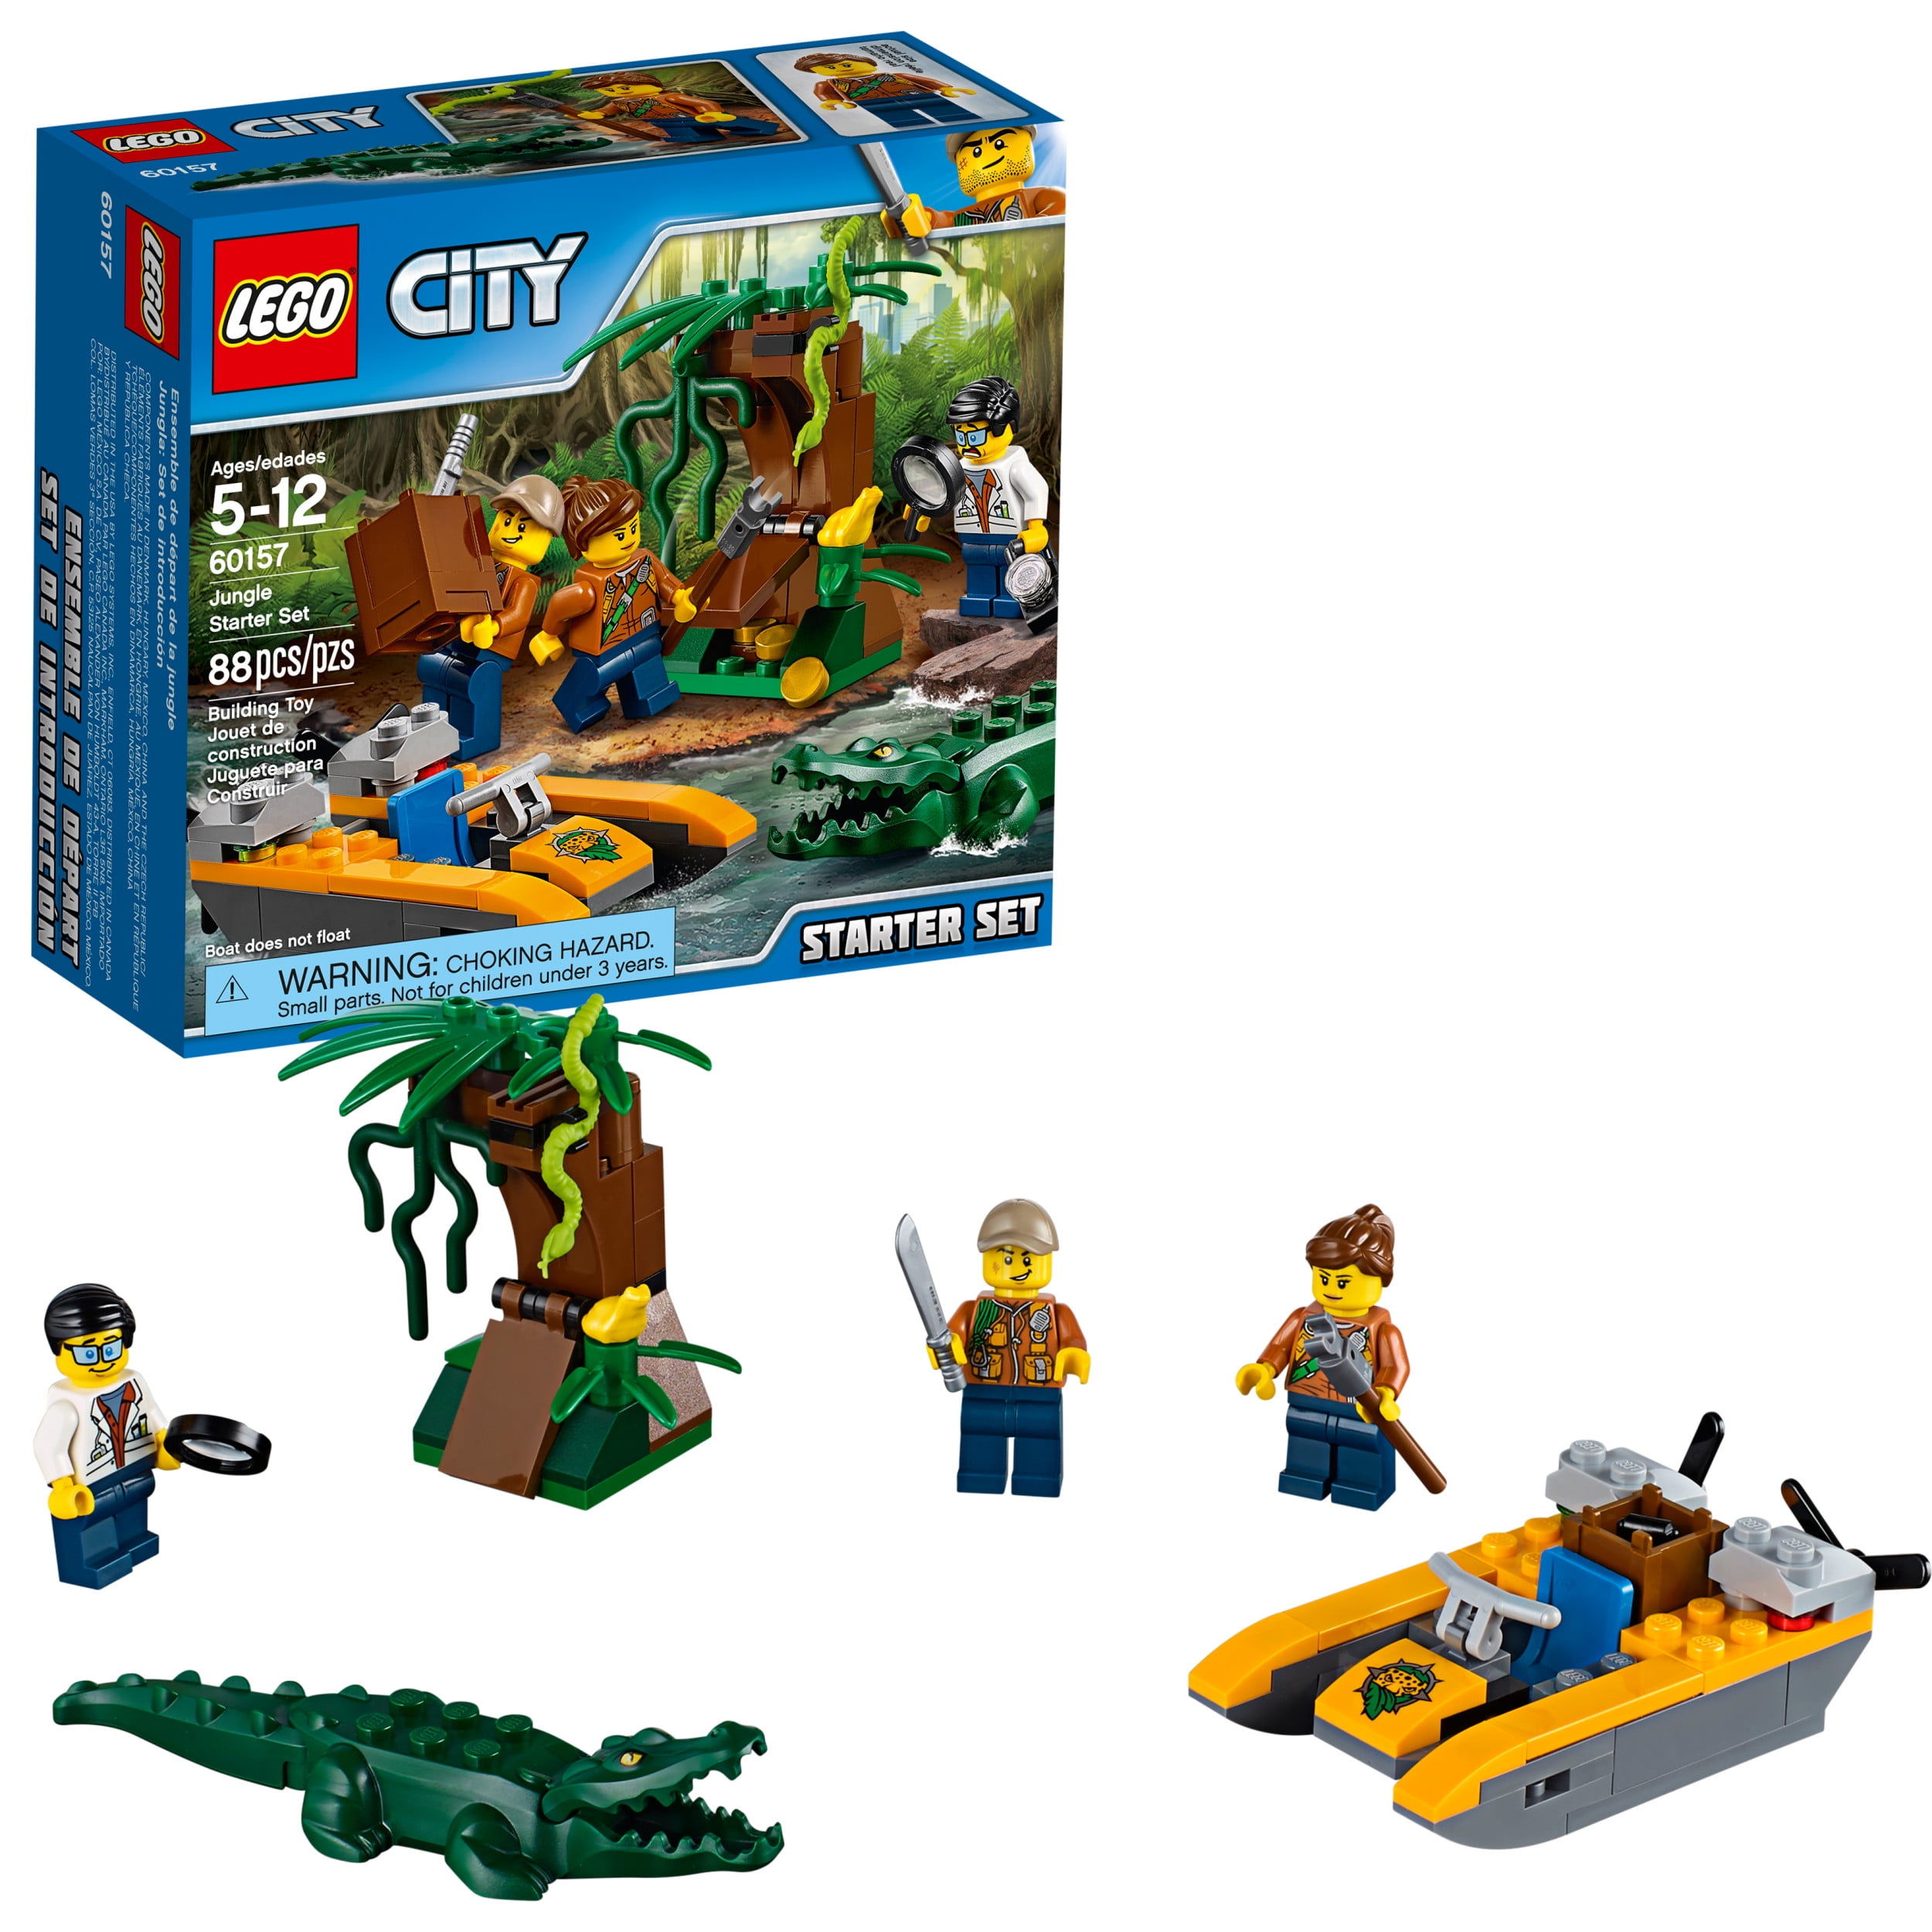 LEGO City Jungle Starter Set Building Set Pieces) - Walmart.com